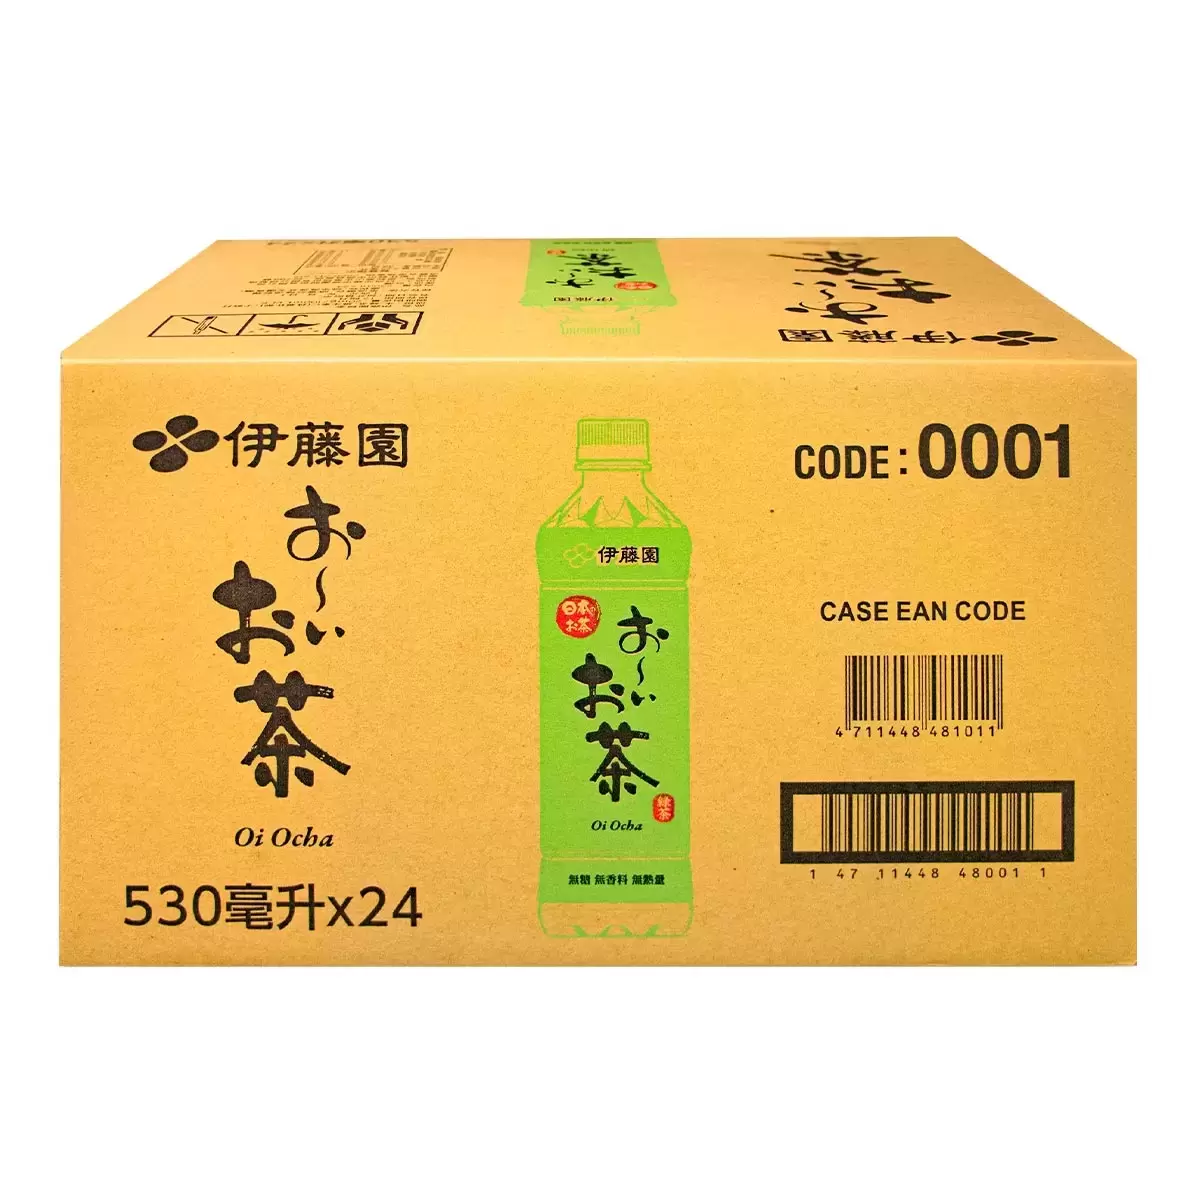 Ito-En 伊藤園 綠茶 530毫升 X 24瓶 X 50箱